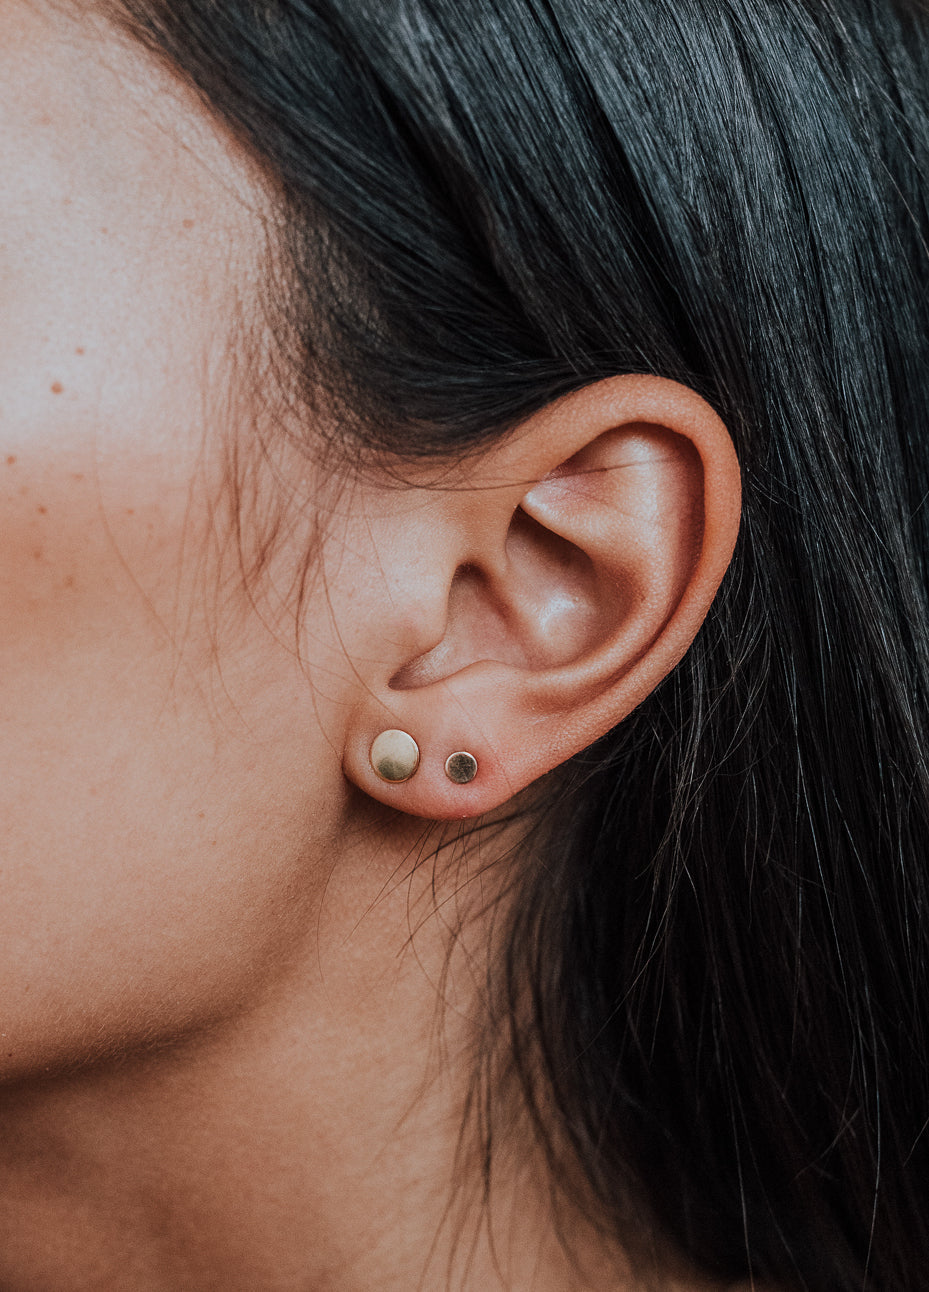 Mini Dot Stud Earrings in Solid Gold